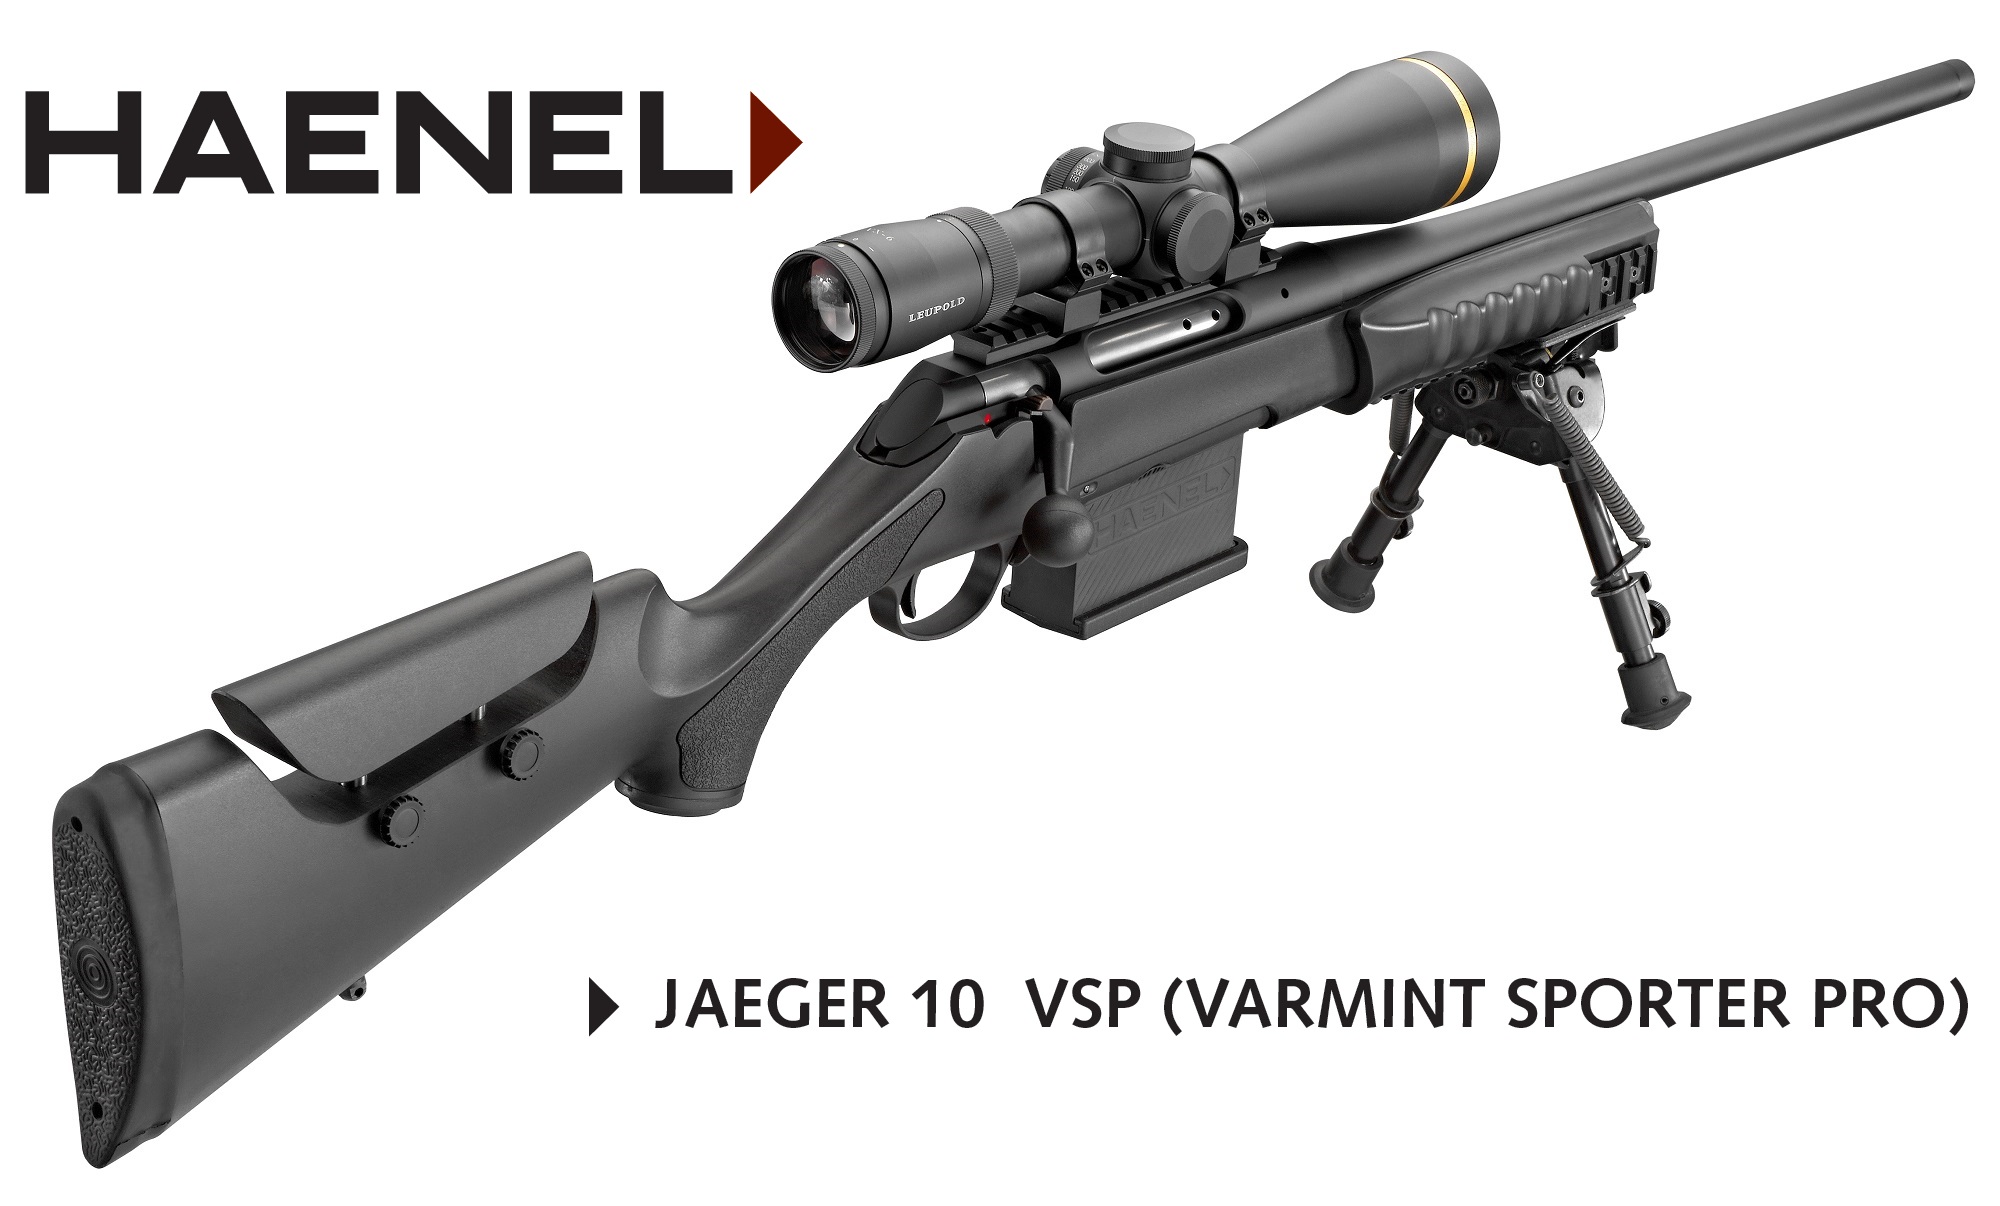 Choix carabine à verrou (Tikka/Sako ? Sabatti ? Ruger ?etc.) Haenel-Jaeger10-VSP-1